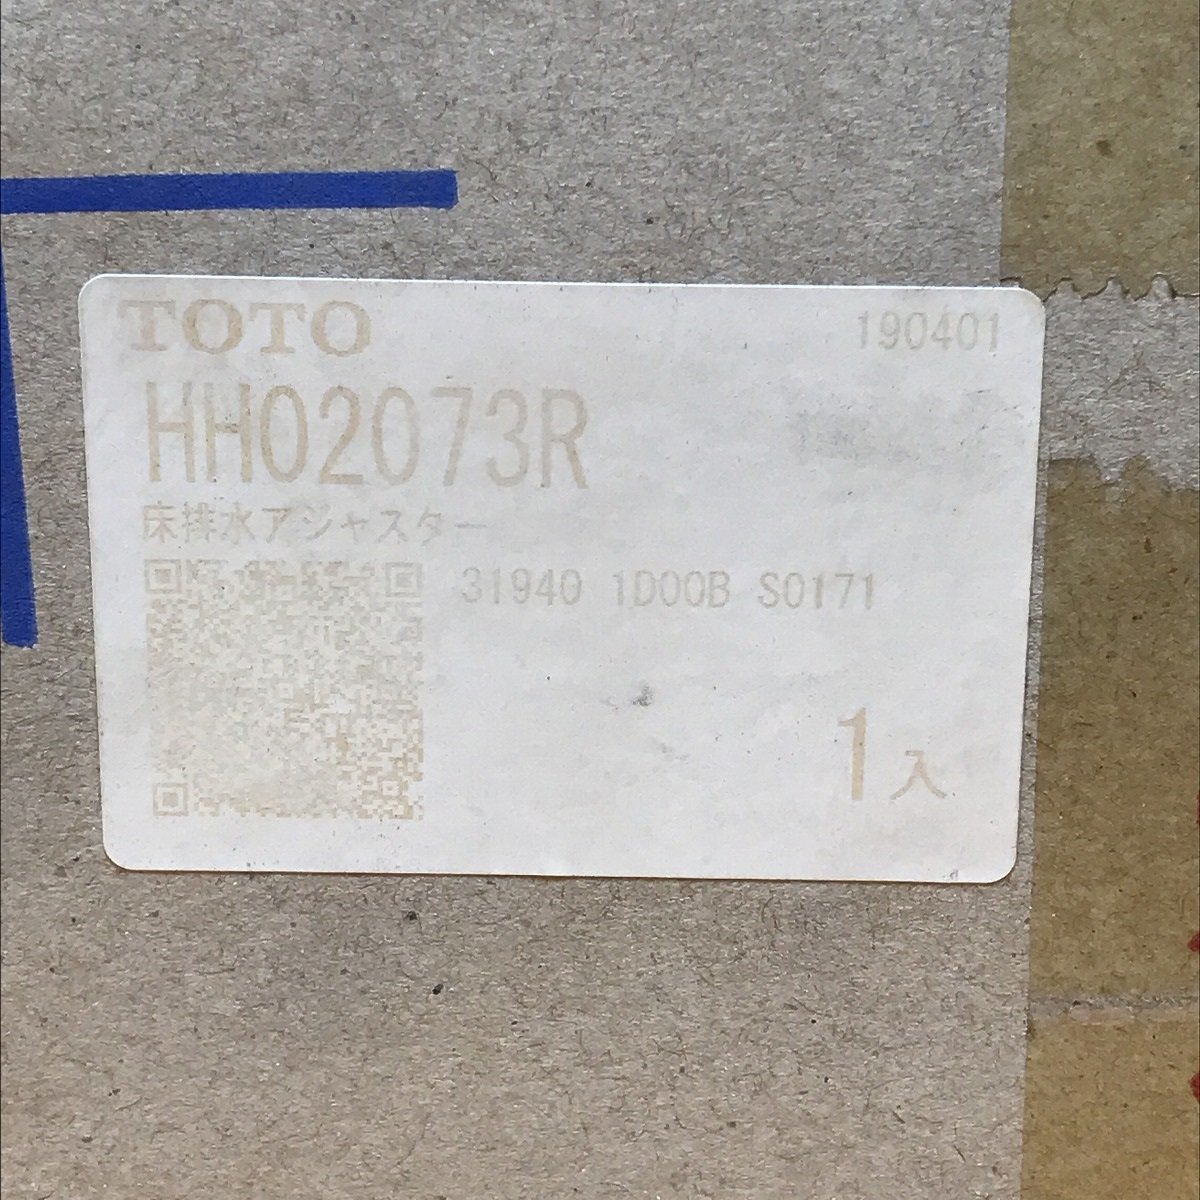 床排水アジャスター TOTO HH02073R サテイゴー_画像8